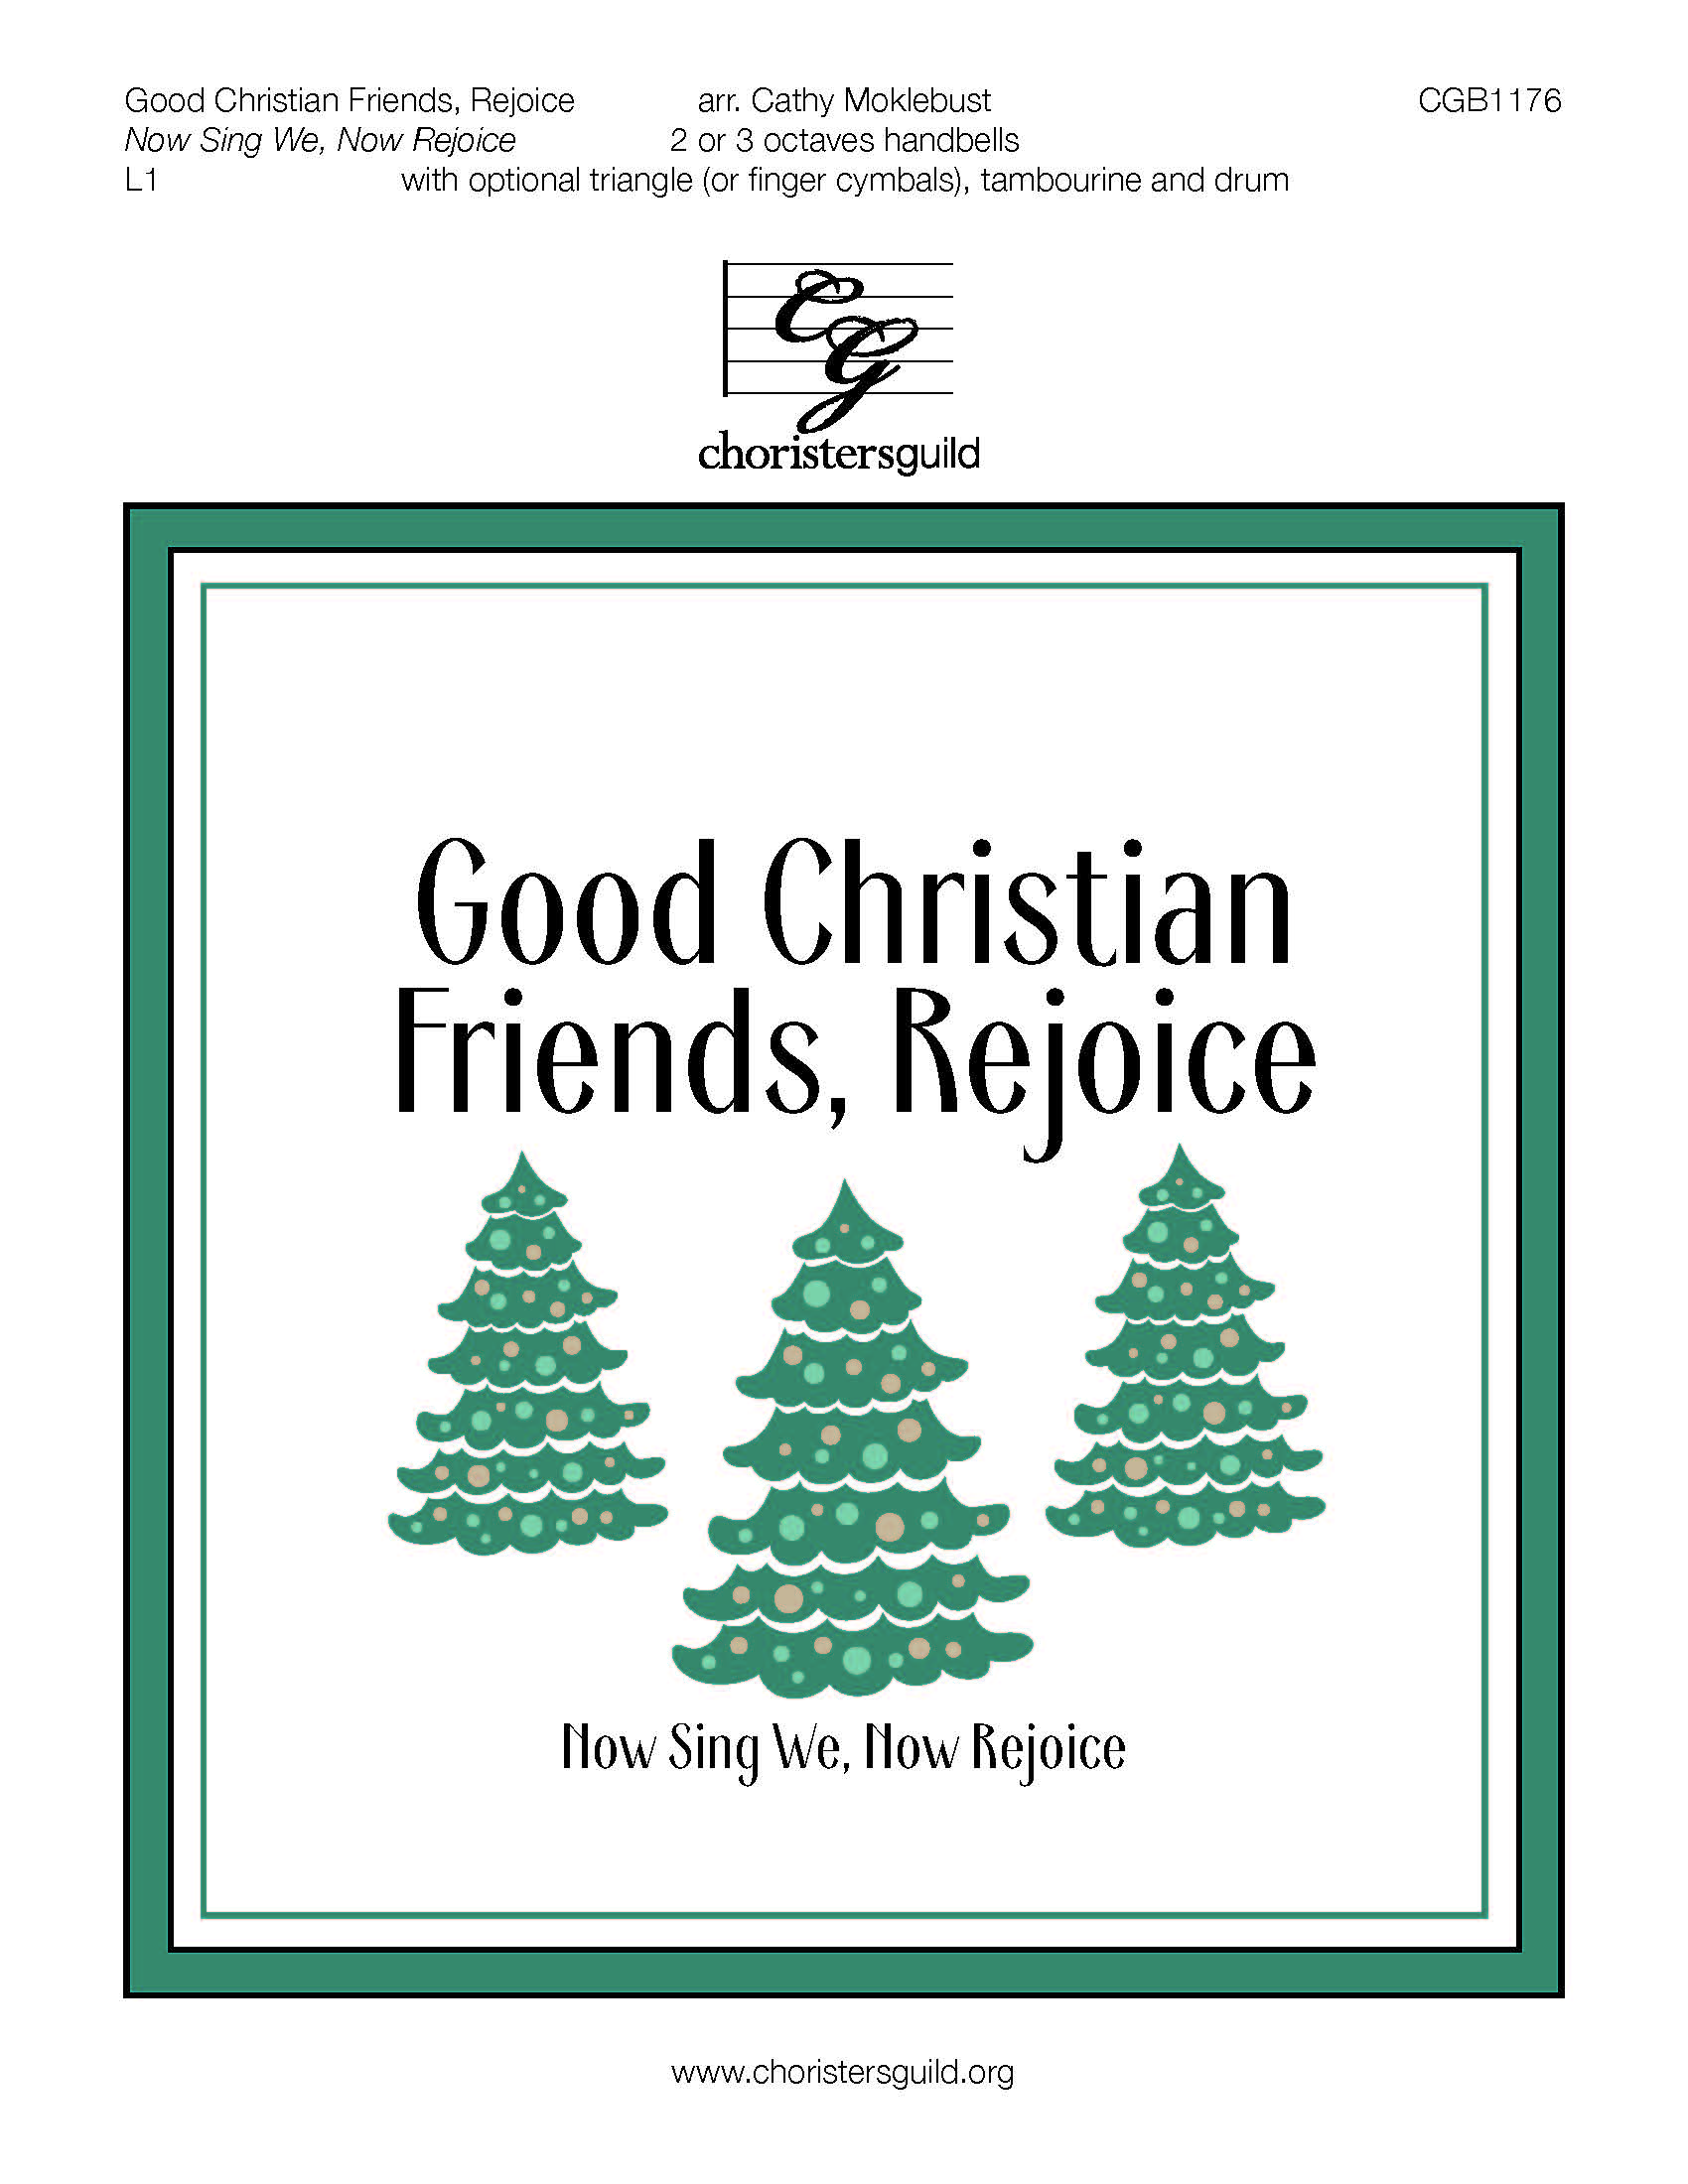 CGB1176 Good Christian Friends, Rejoice